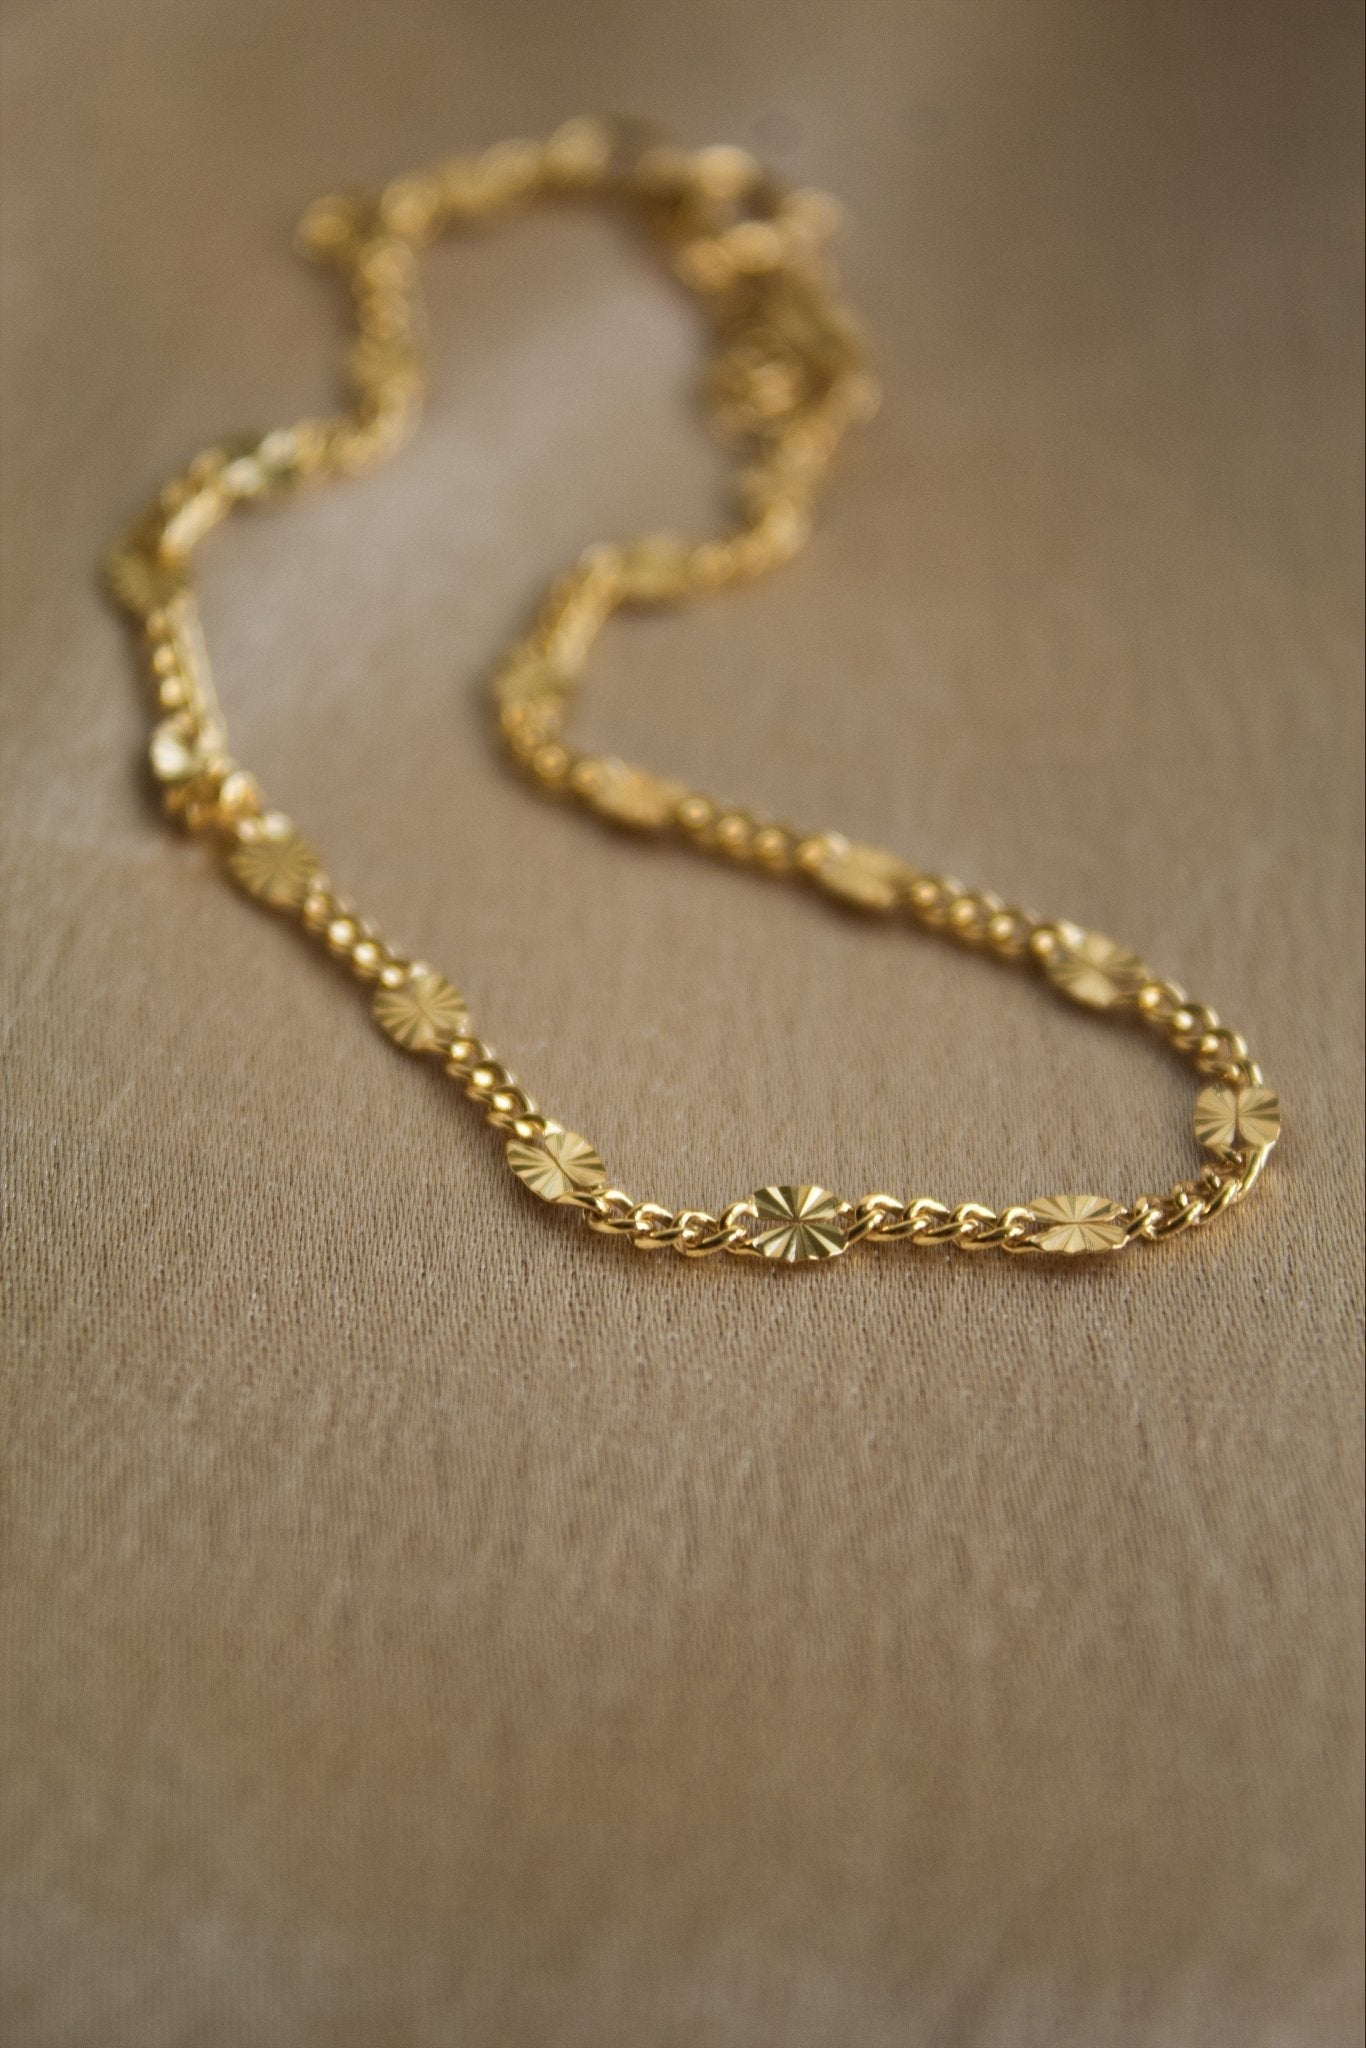 Gold Starburst Bracelet and Anklet Set - Jewellery Hut